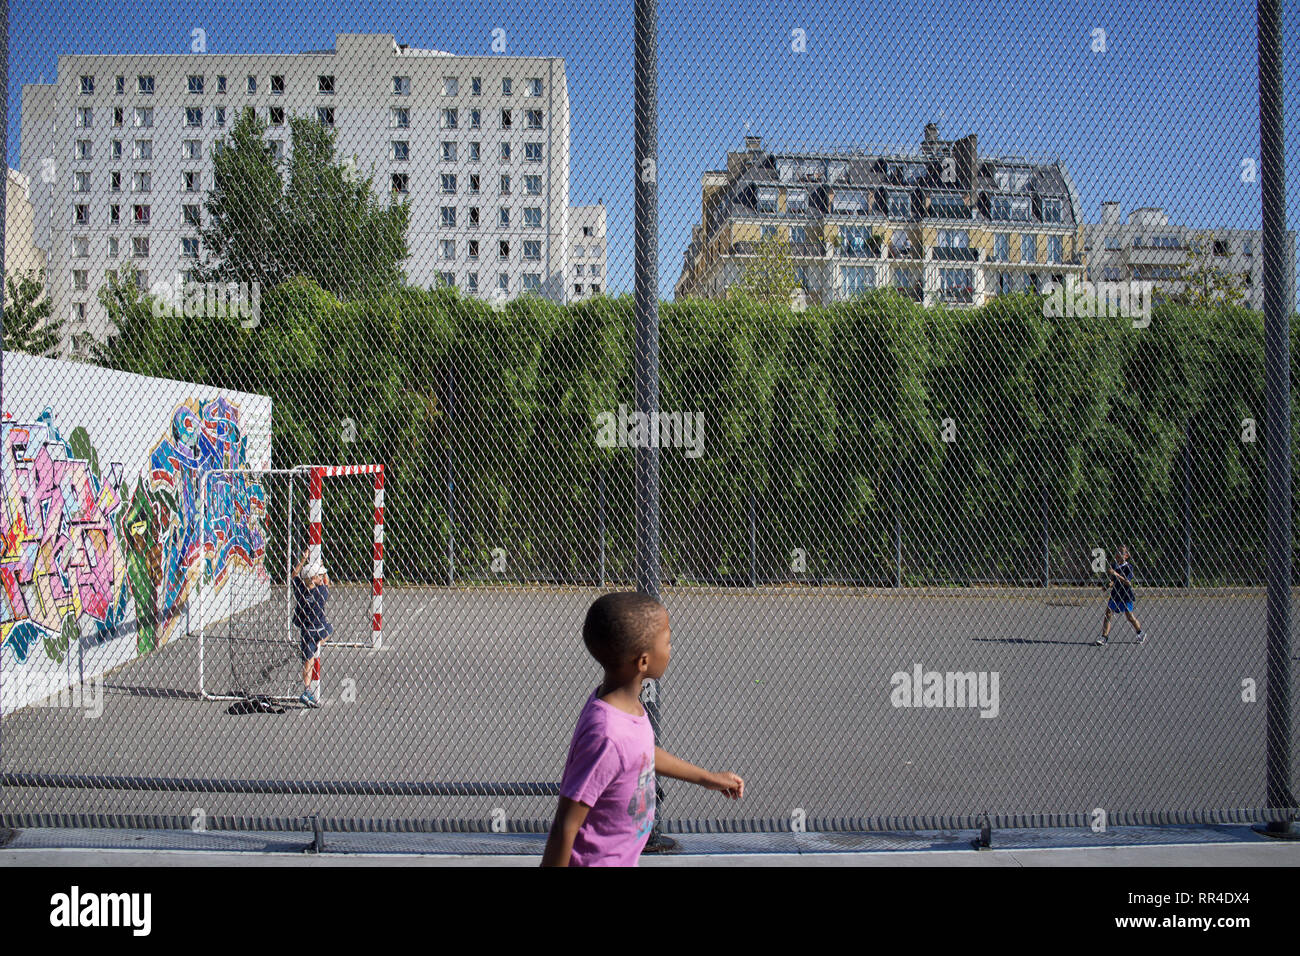 Les enfants jouent dans un terrain de football clôturé, Jardins d'Eole, rue du Département, 75018, Paris, France Banque D'Images